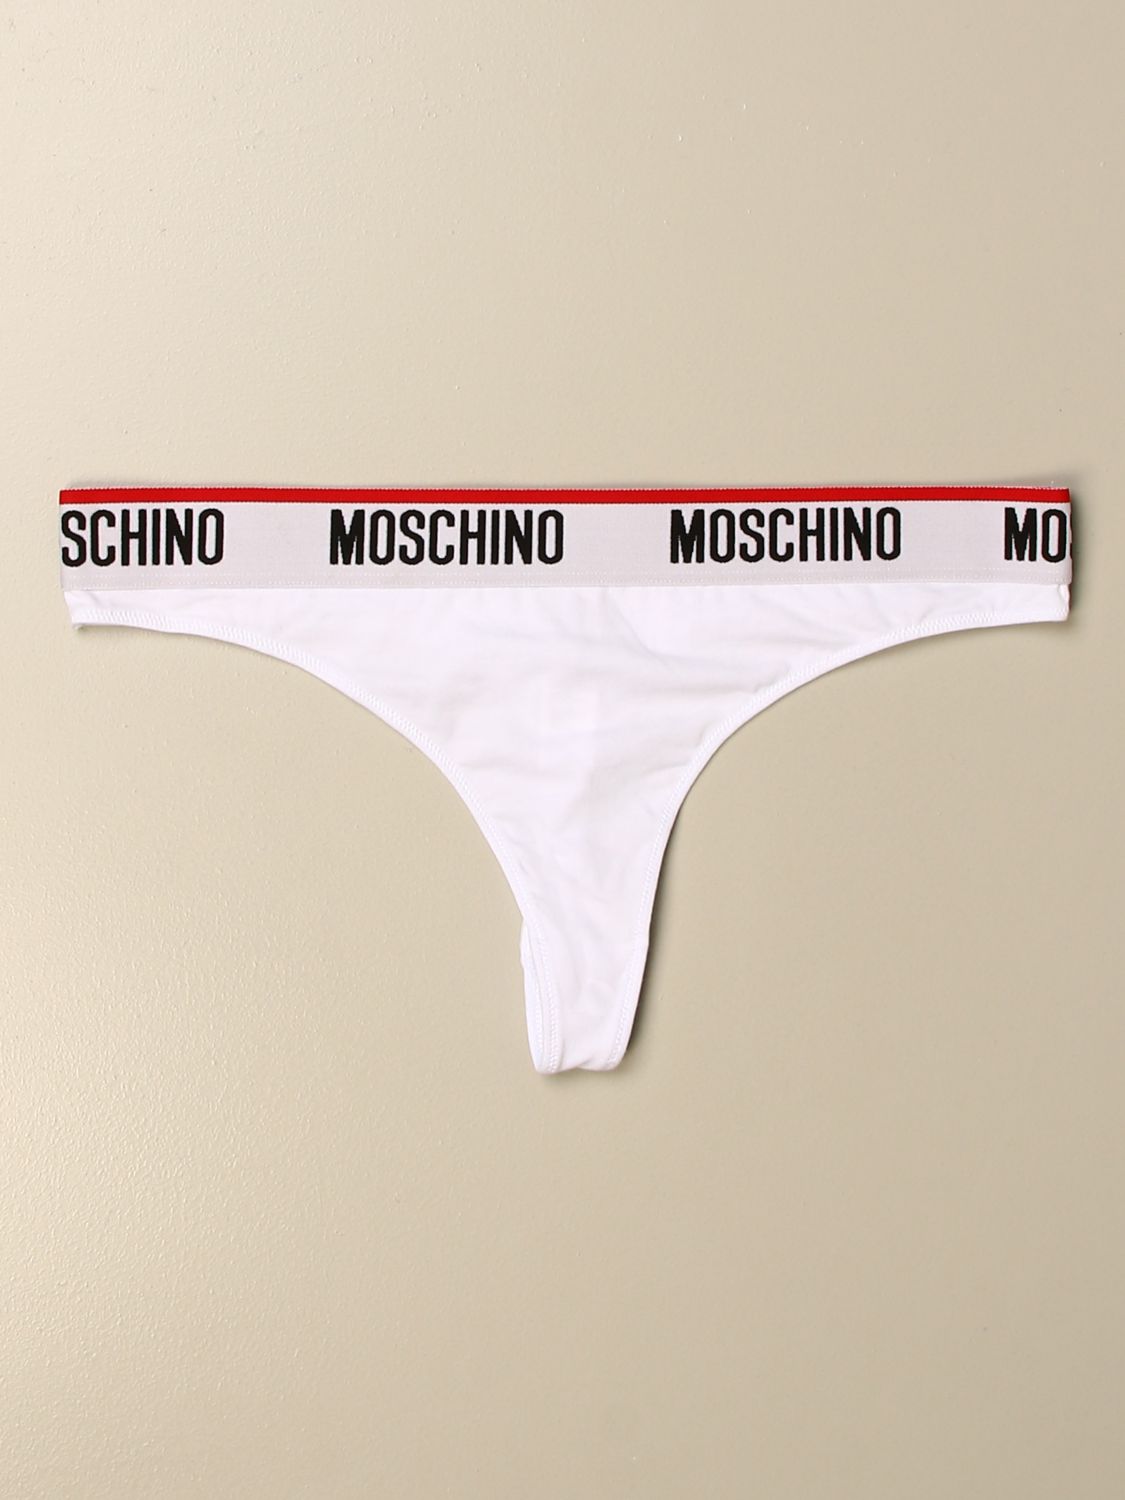 moschino women's underwear uk